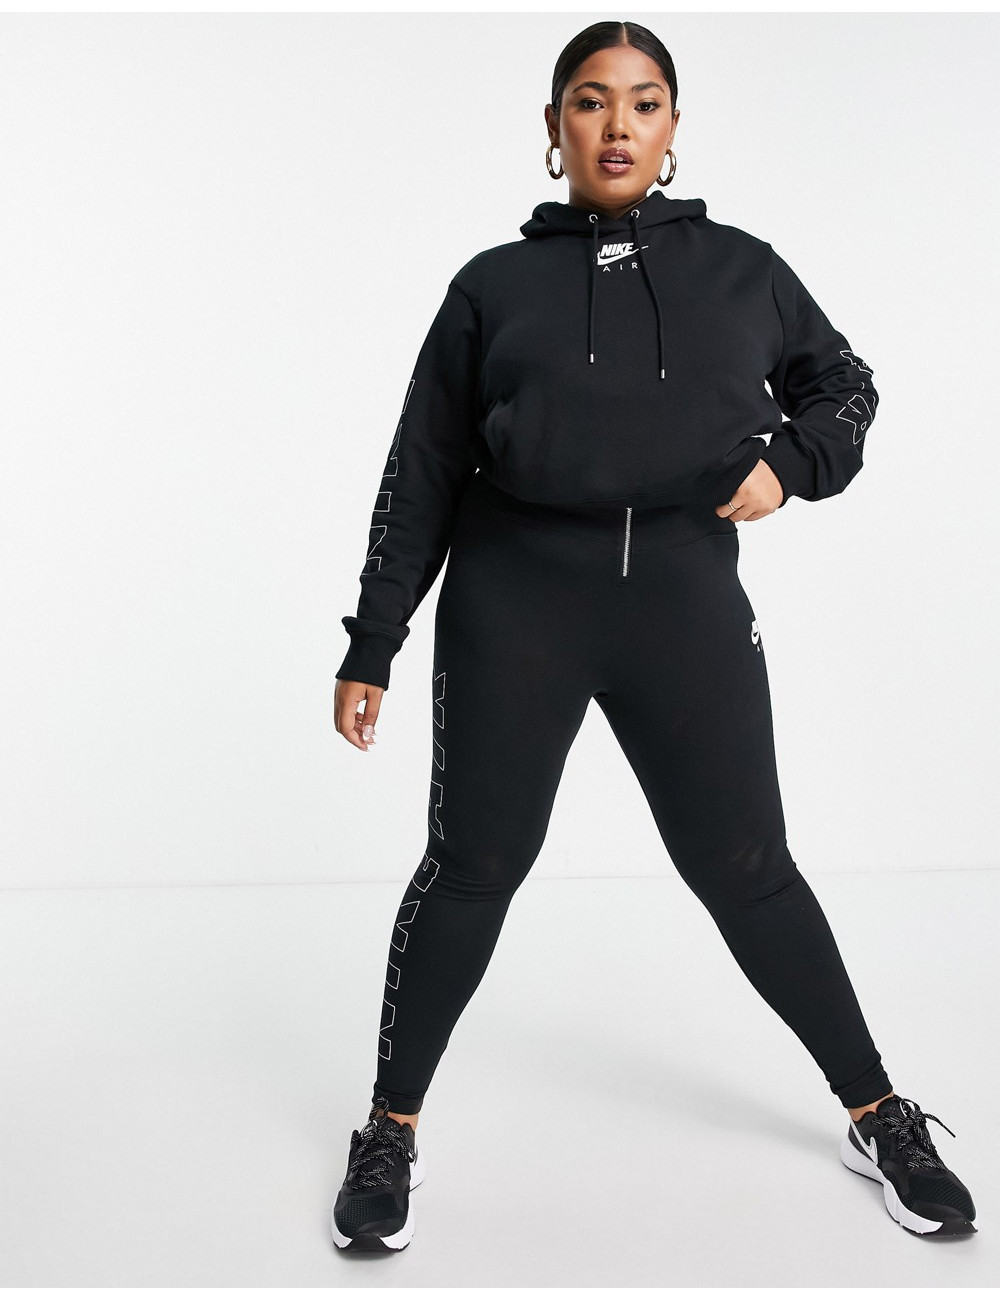 Nike Plus Air hoodie in black